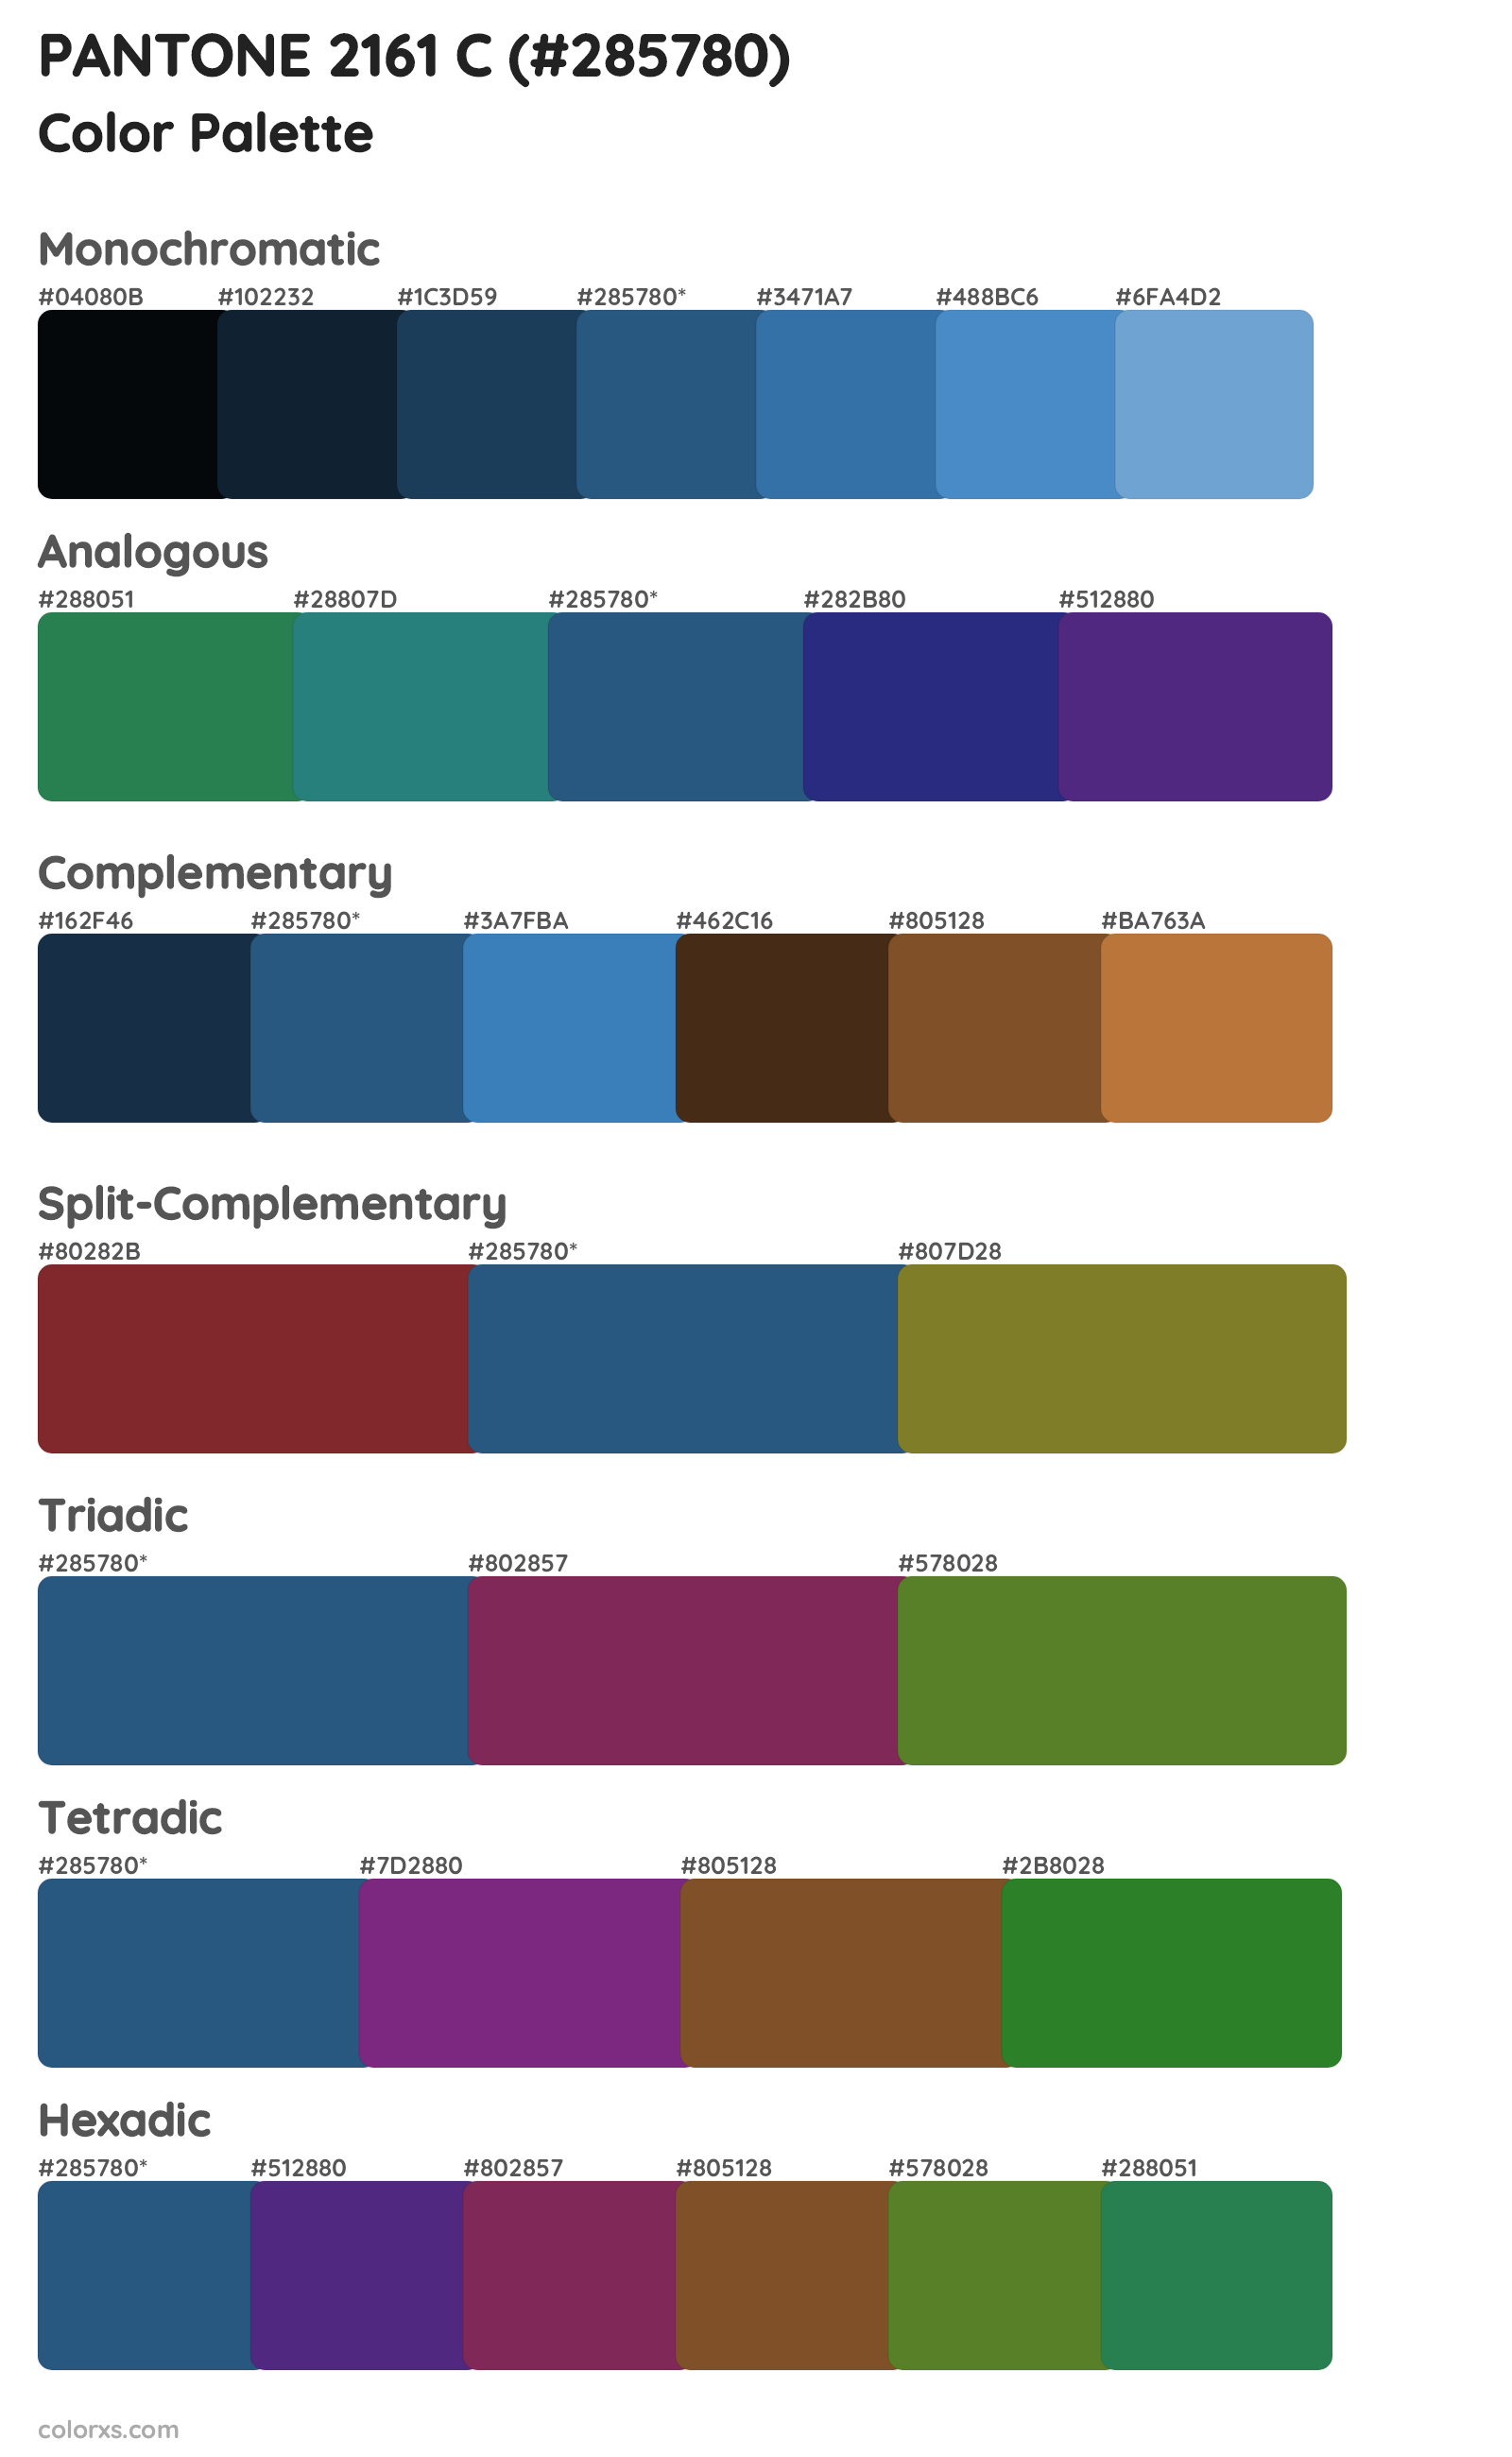 PANTONE 2161 C Color Scheme Palettes